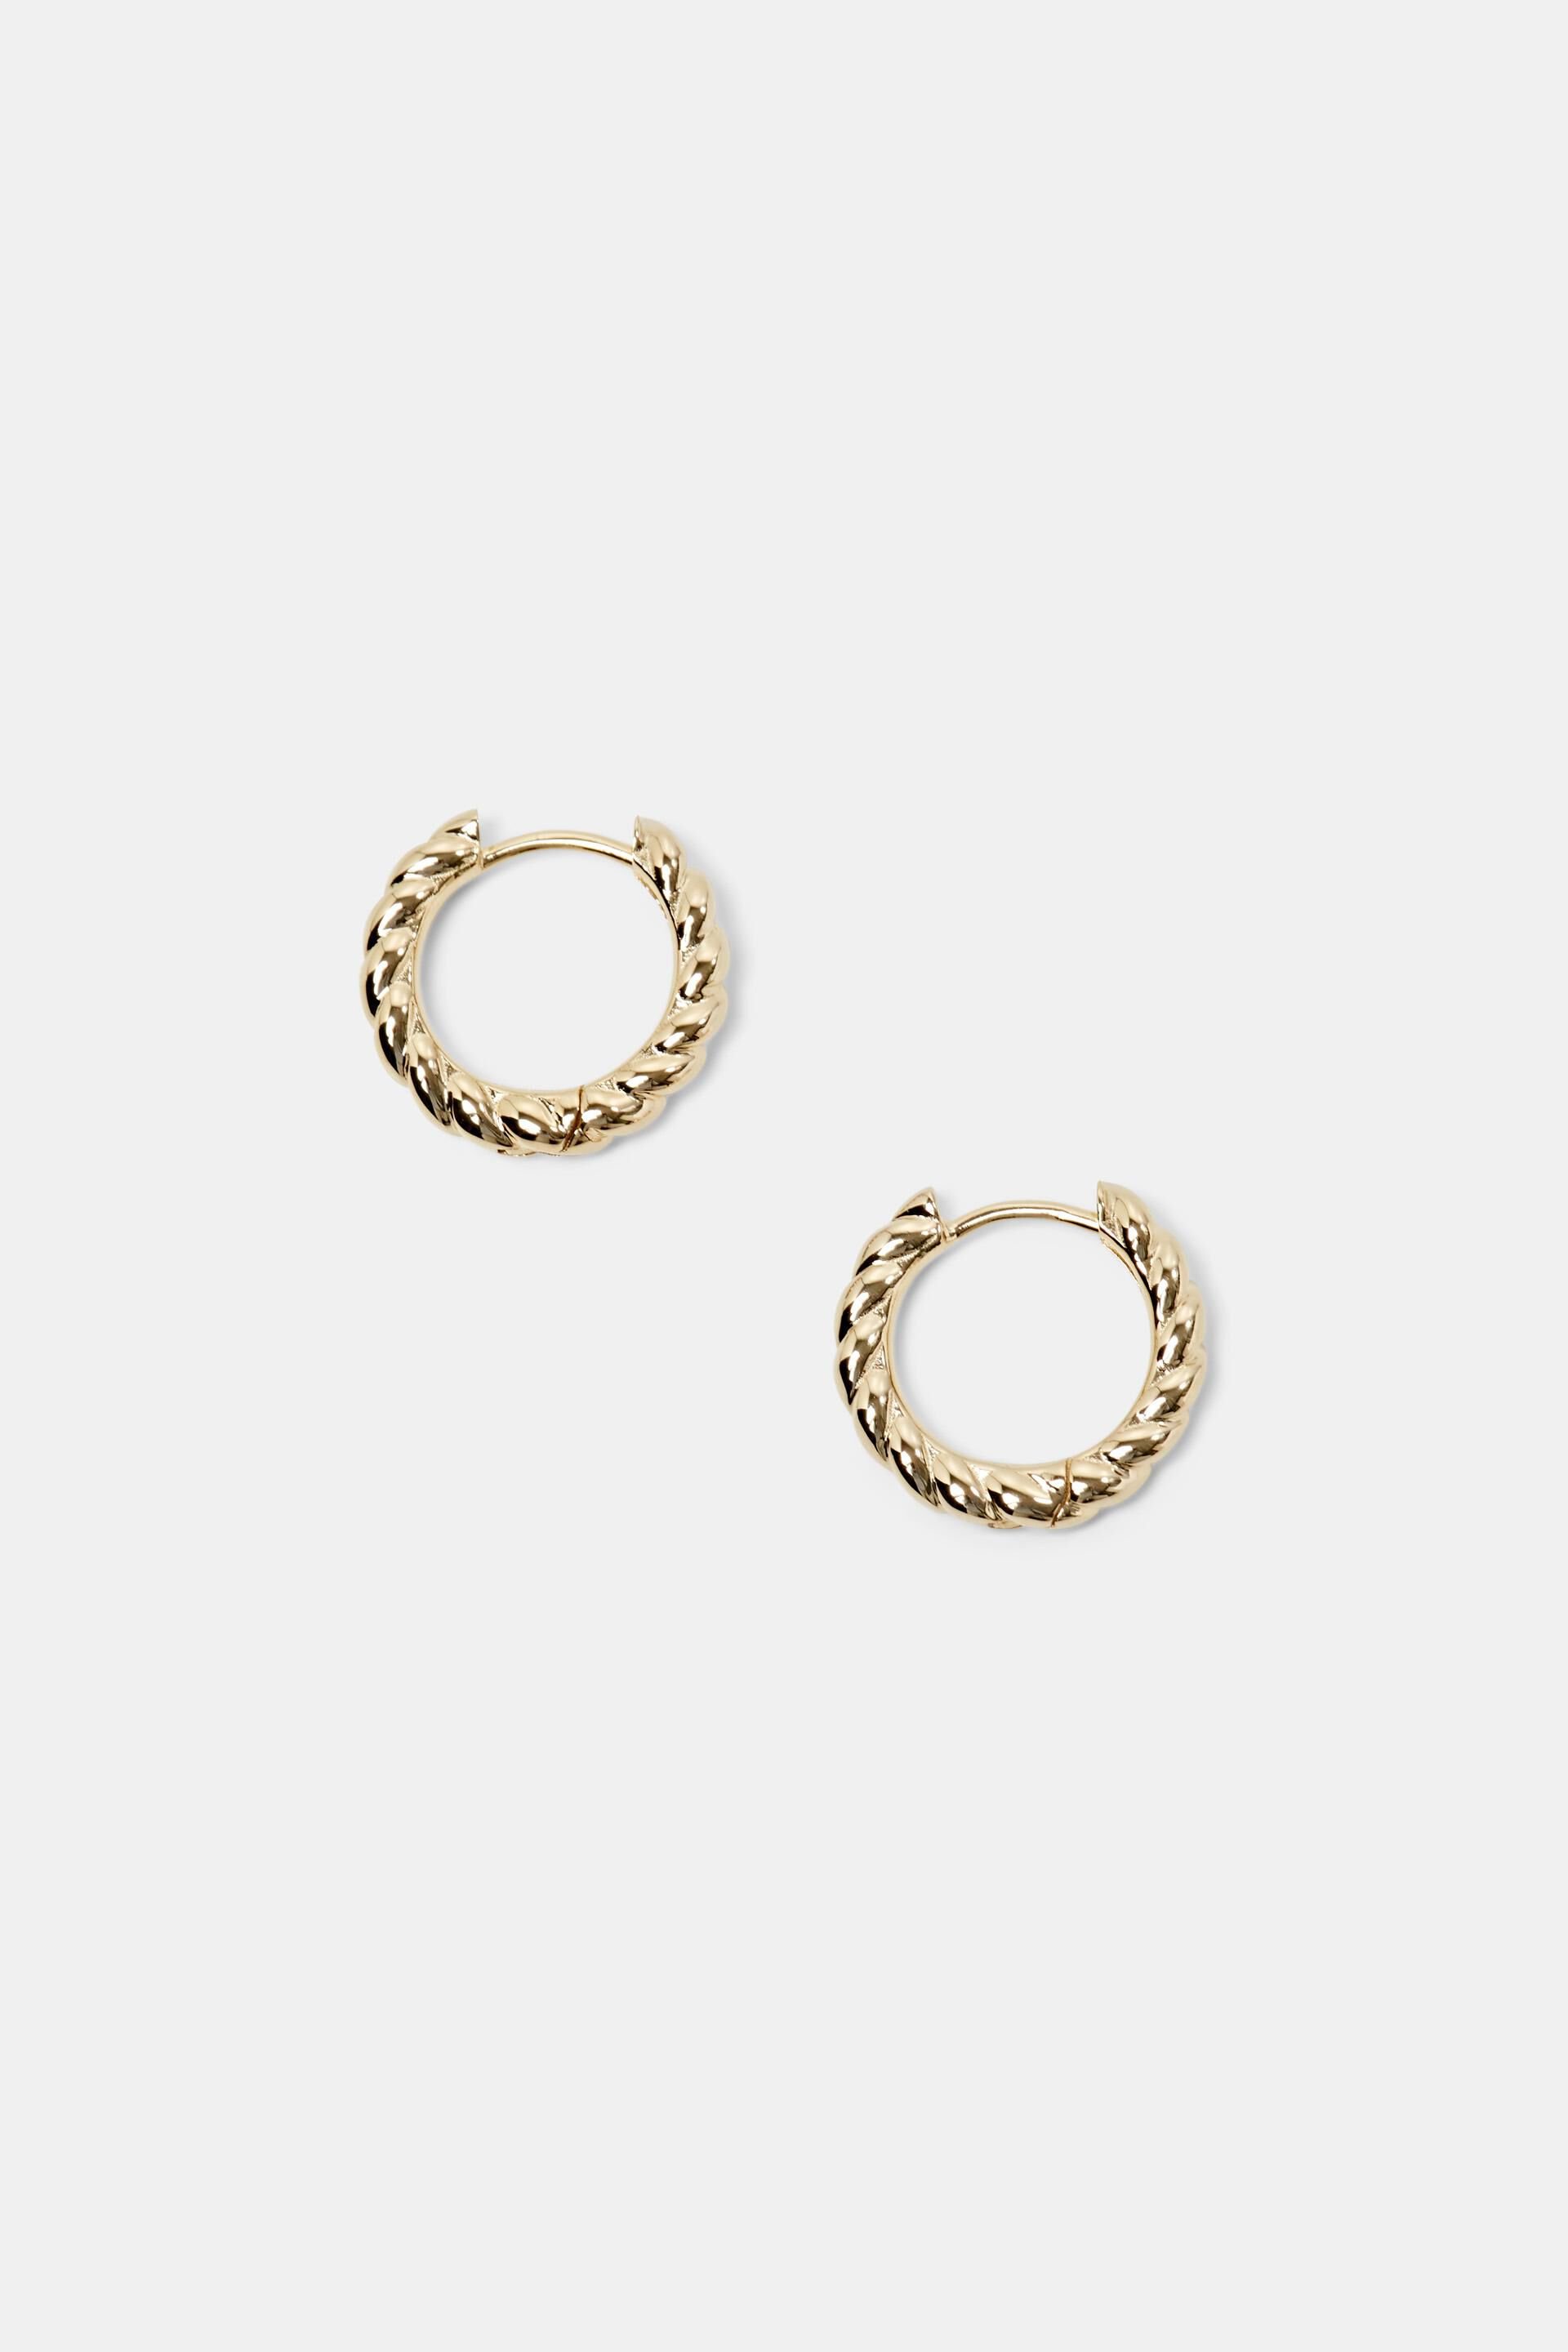 Esprit Online Store Twisted Gold-Tone Hoop Earrings